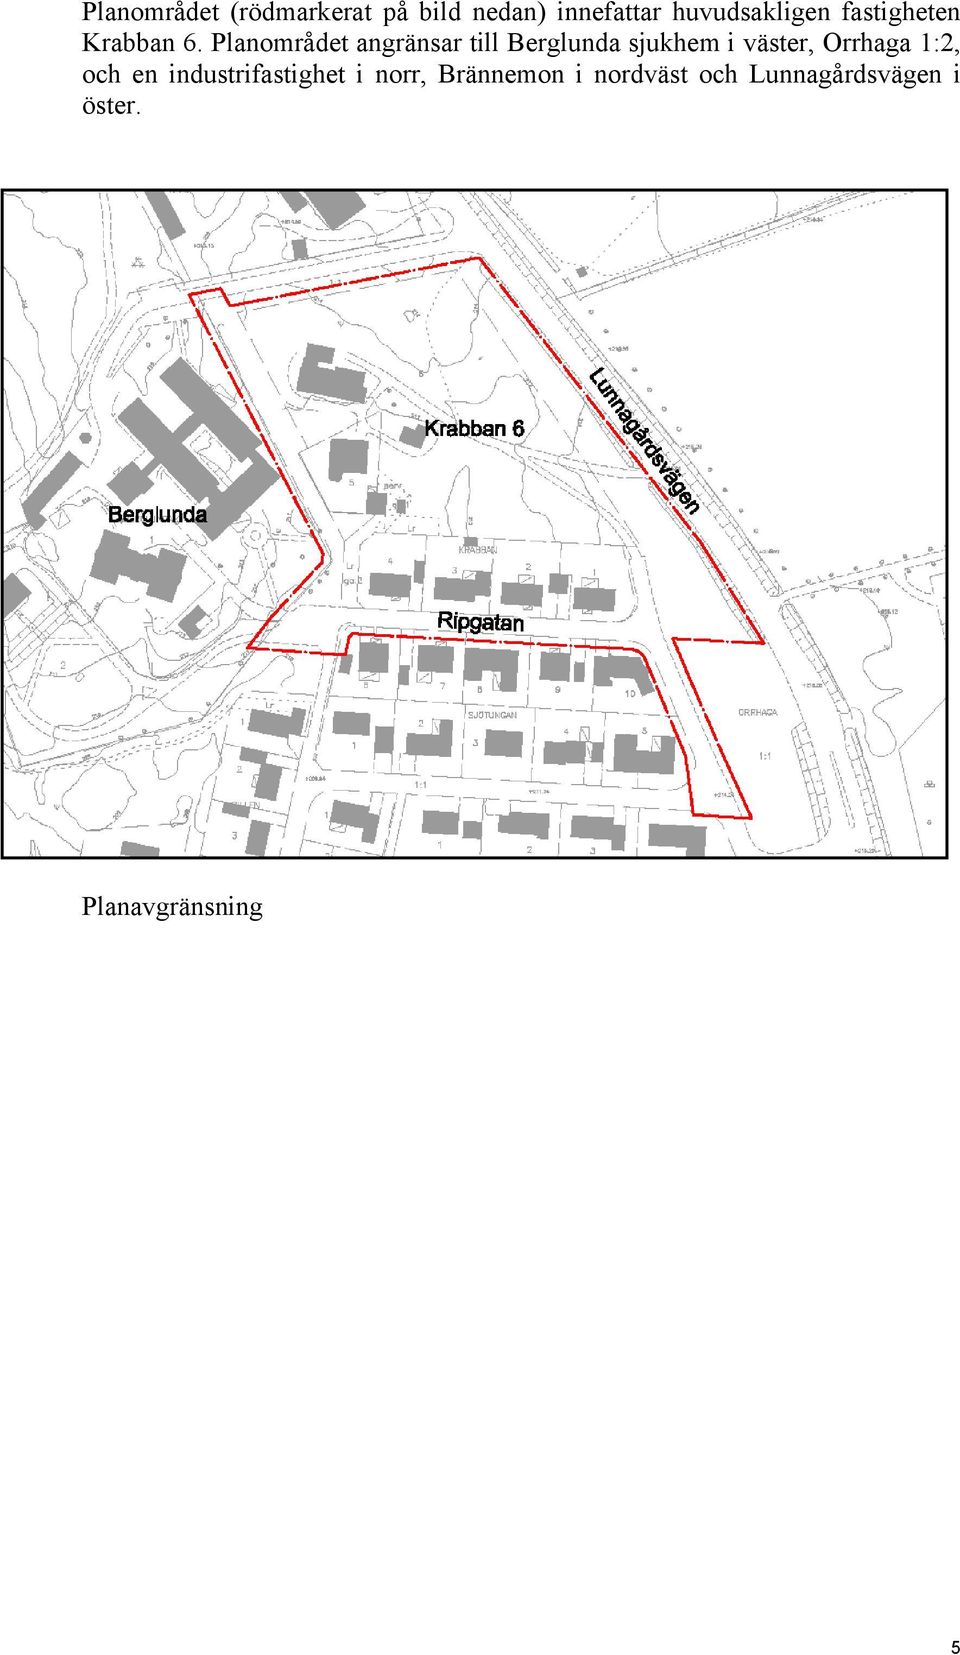 Planområdet angränsar till Berglunda sjukhem i väster, Orrhaga